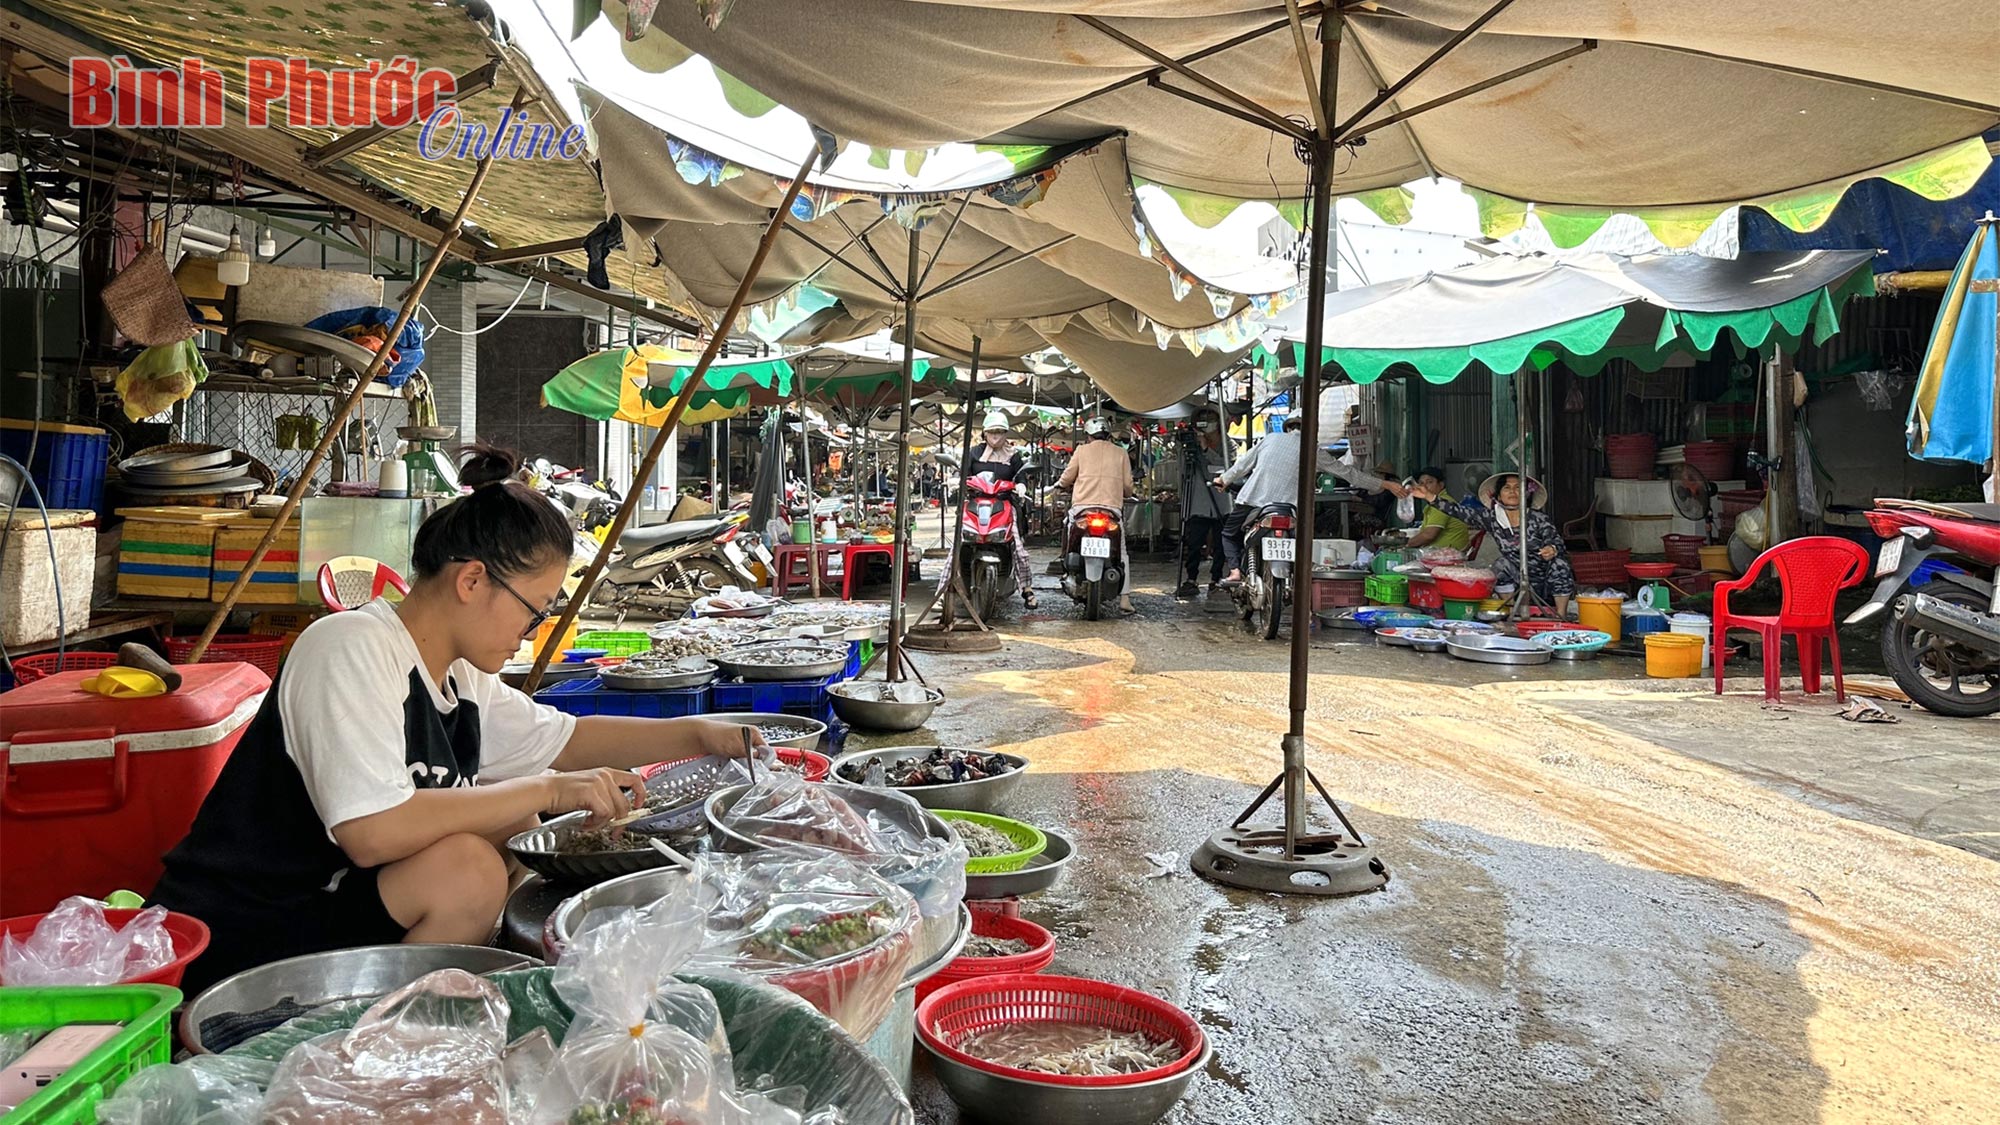 Xã hội hóa nhìn từ chợ Bình Long